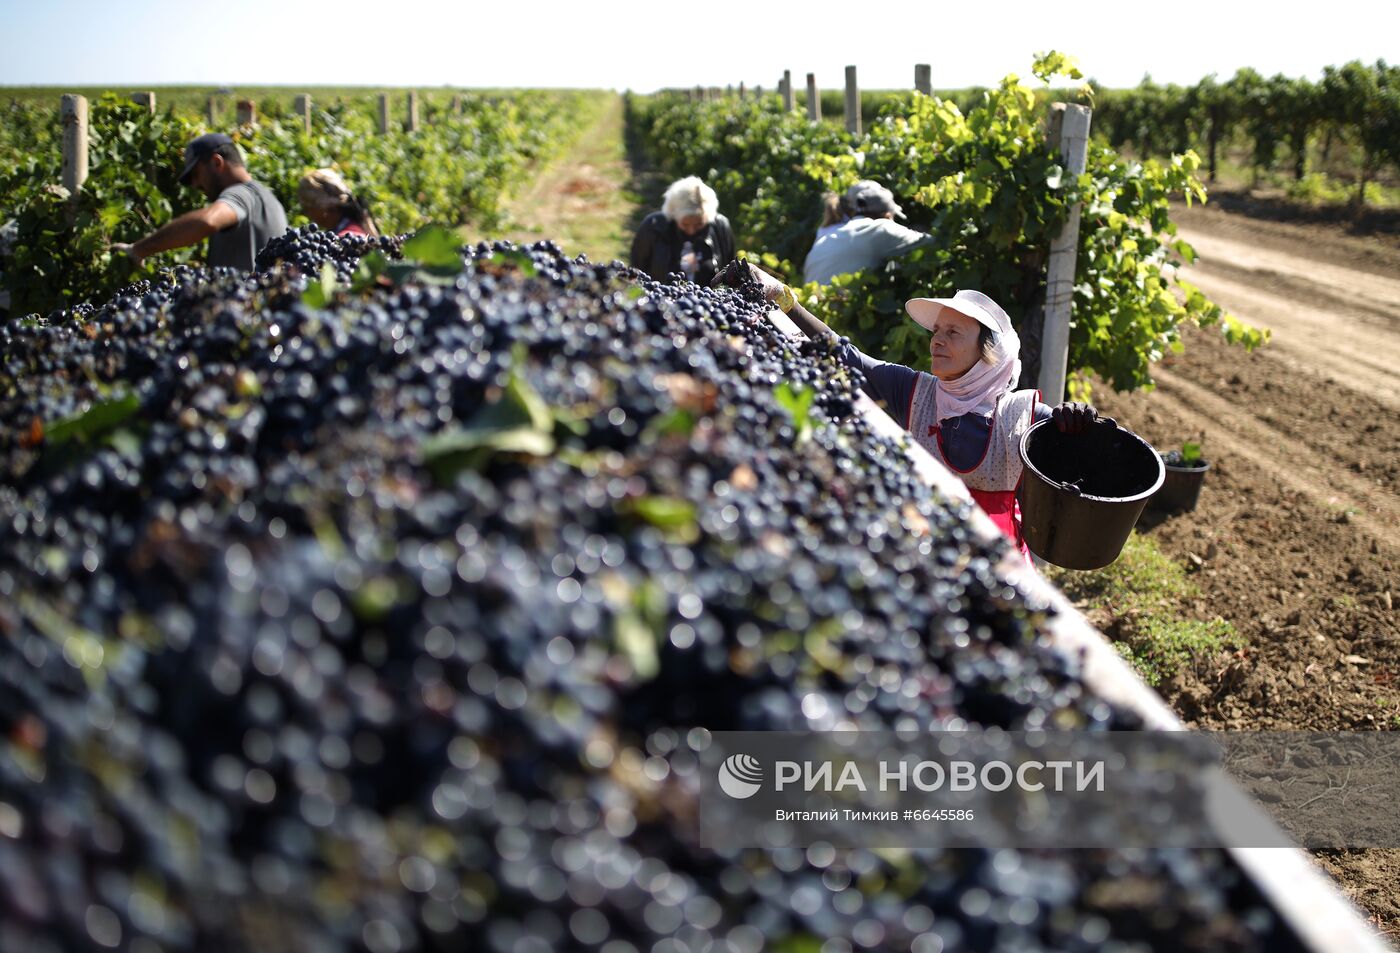 Производство вина на винодельне "Кубань-вино"